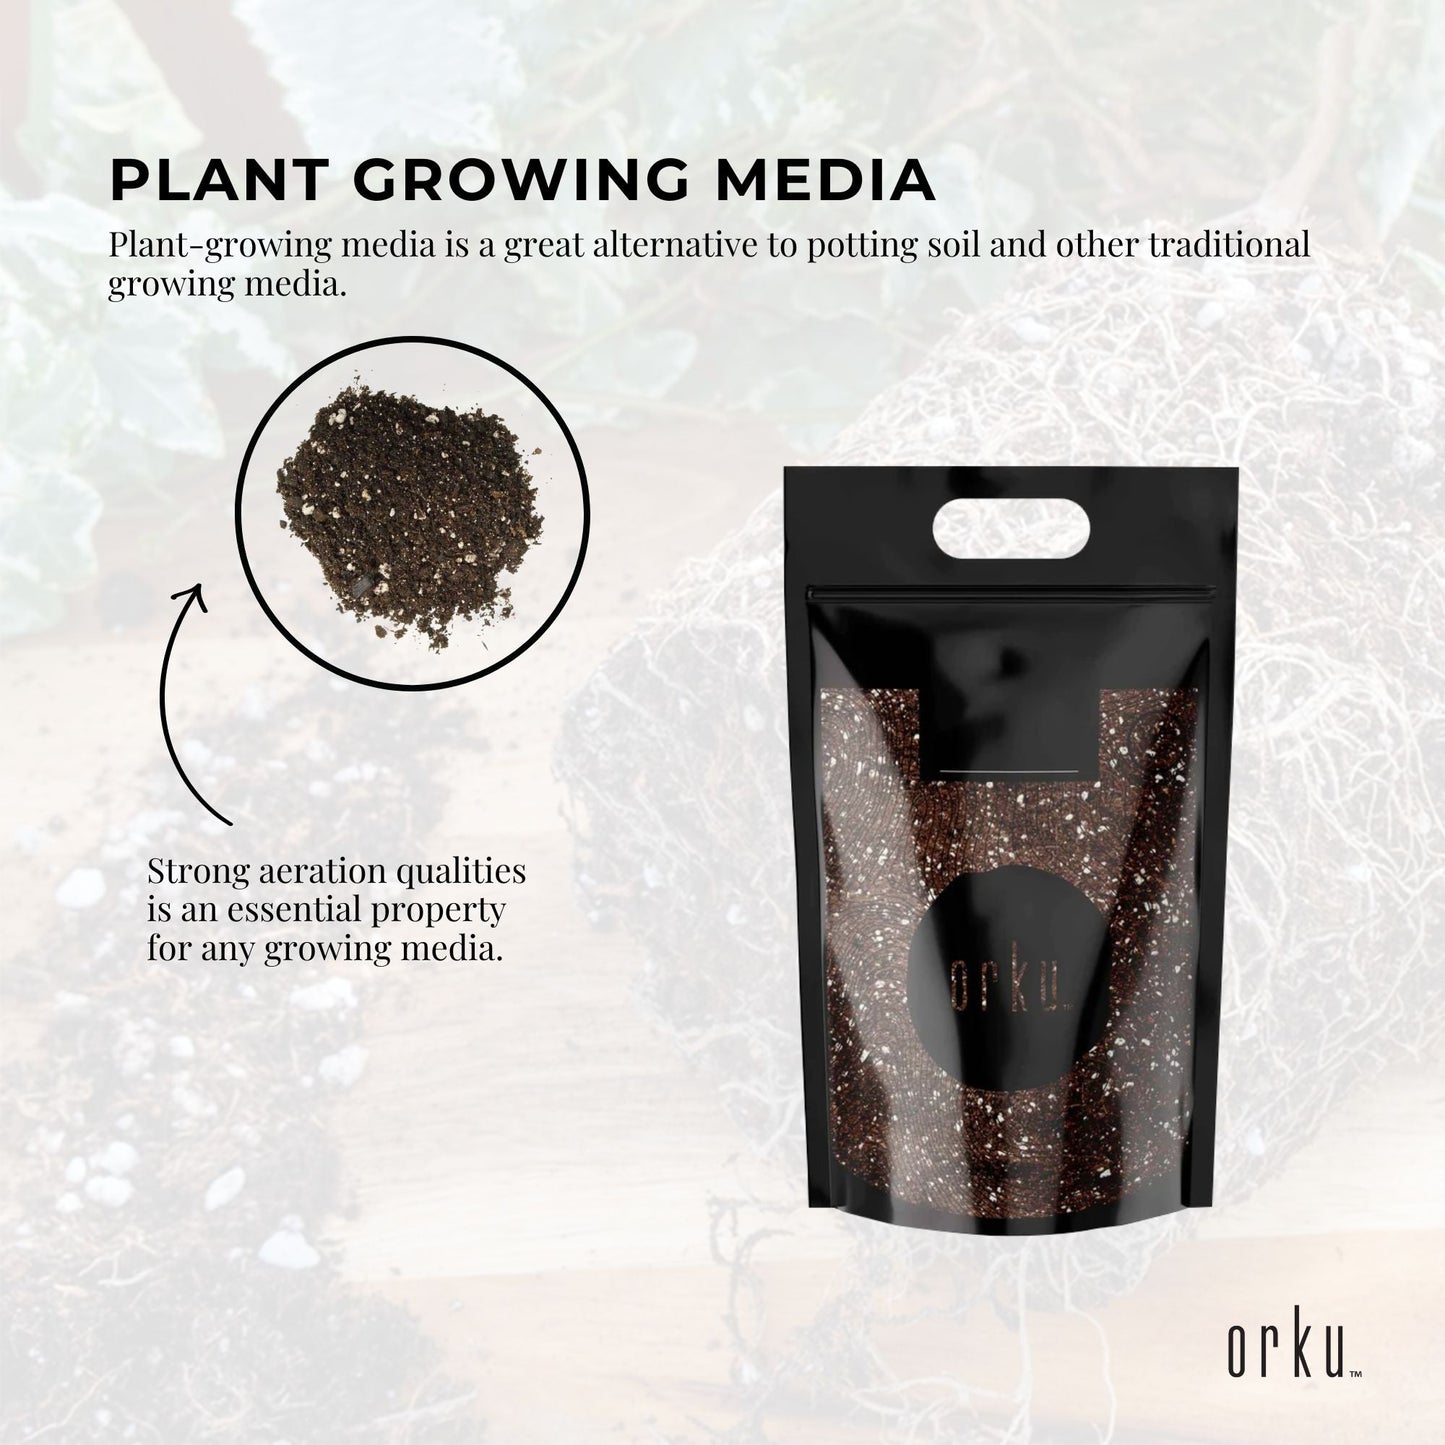 5L Premium Coco Perlite Mix - 70% Coir Husk 30% Hydroponic Plant Growing Medium